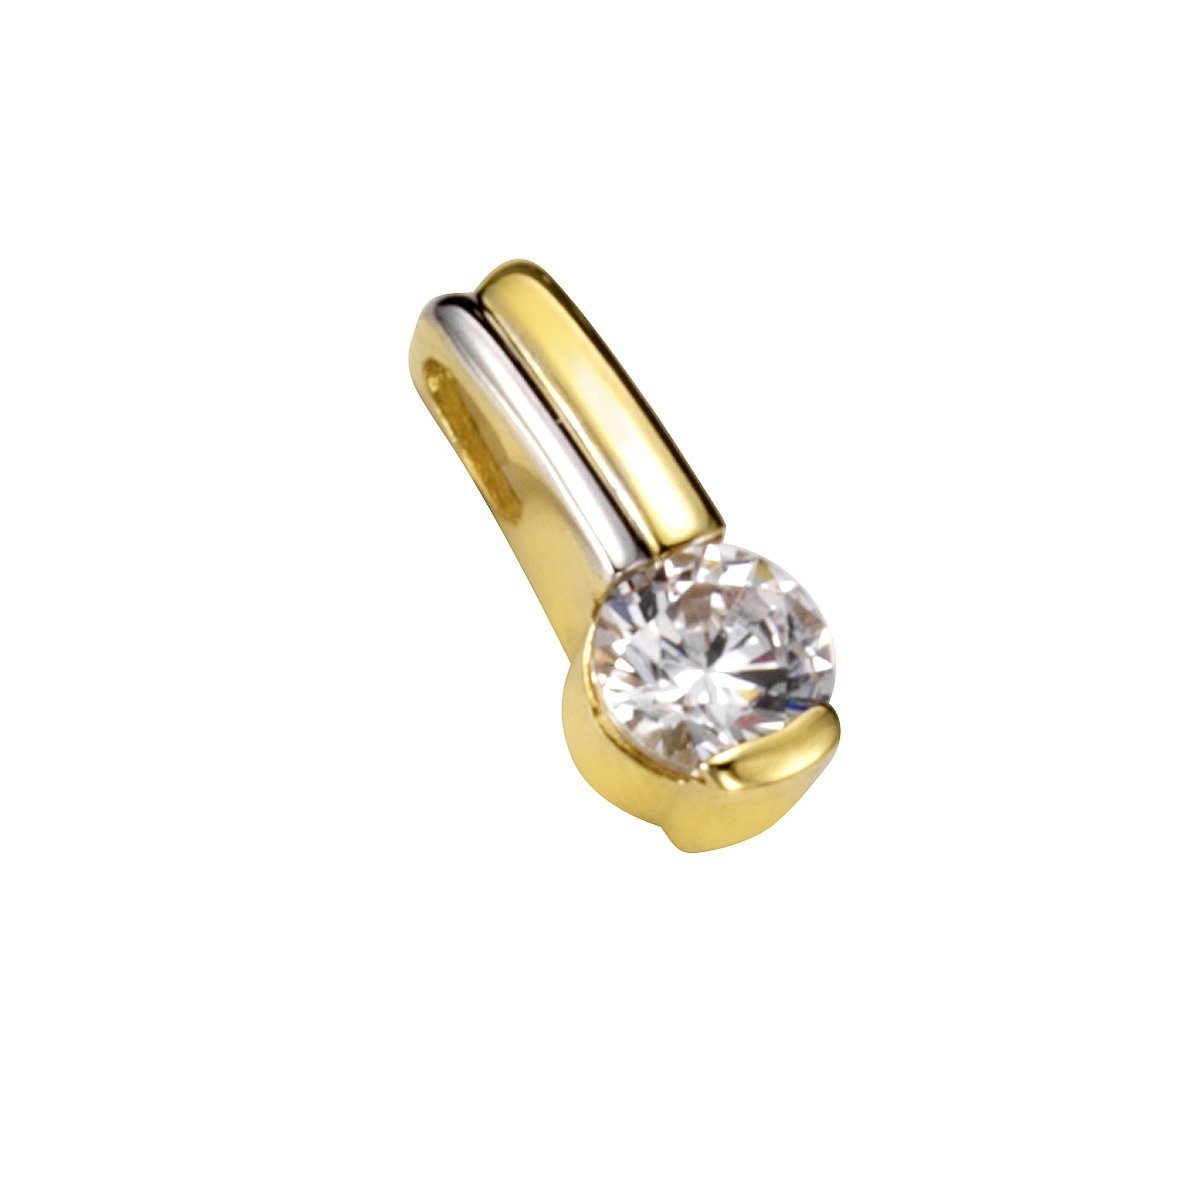 Vivance Kettenanhänger 333/- Gold bicolor Zirkonia, In gefertigt hochwertiger Juweliersqualität